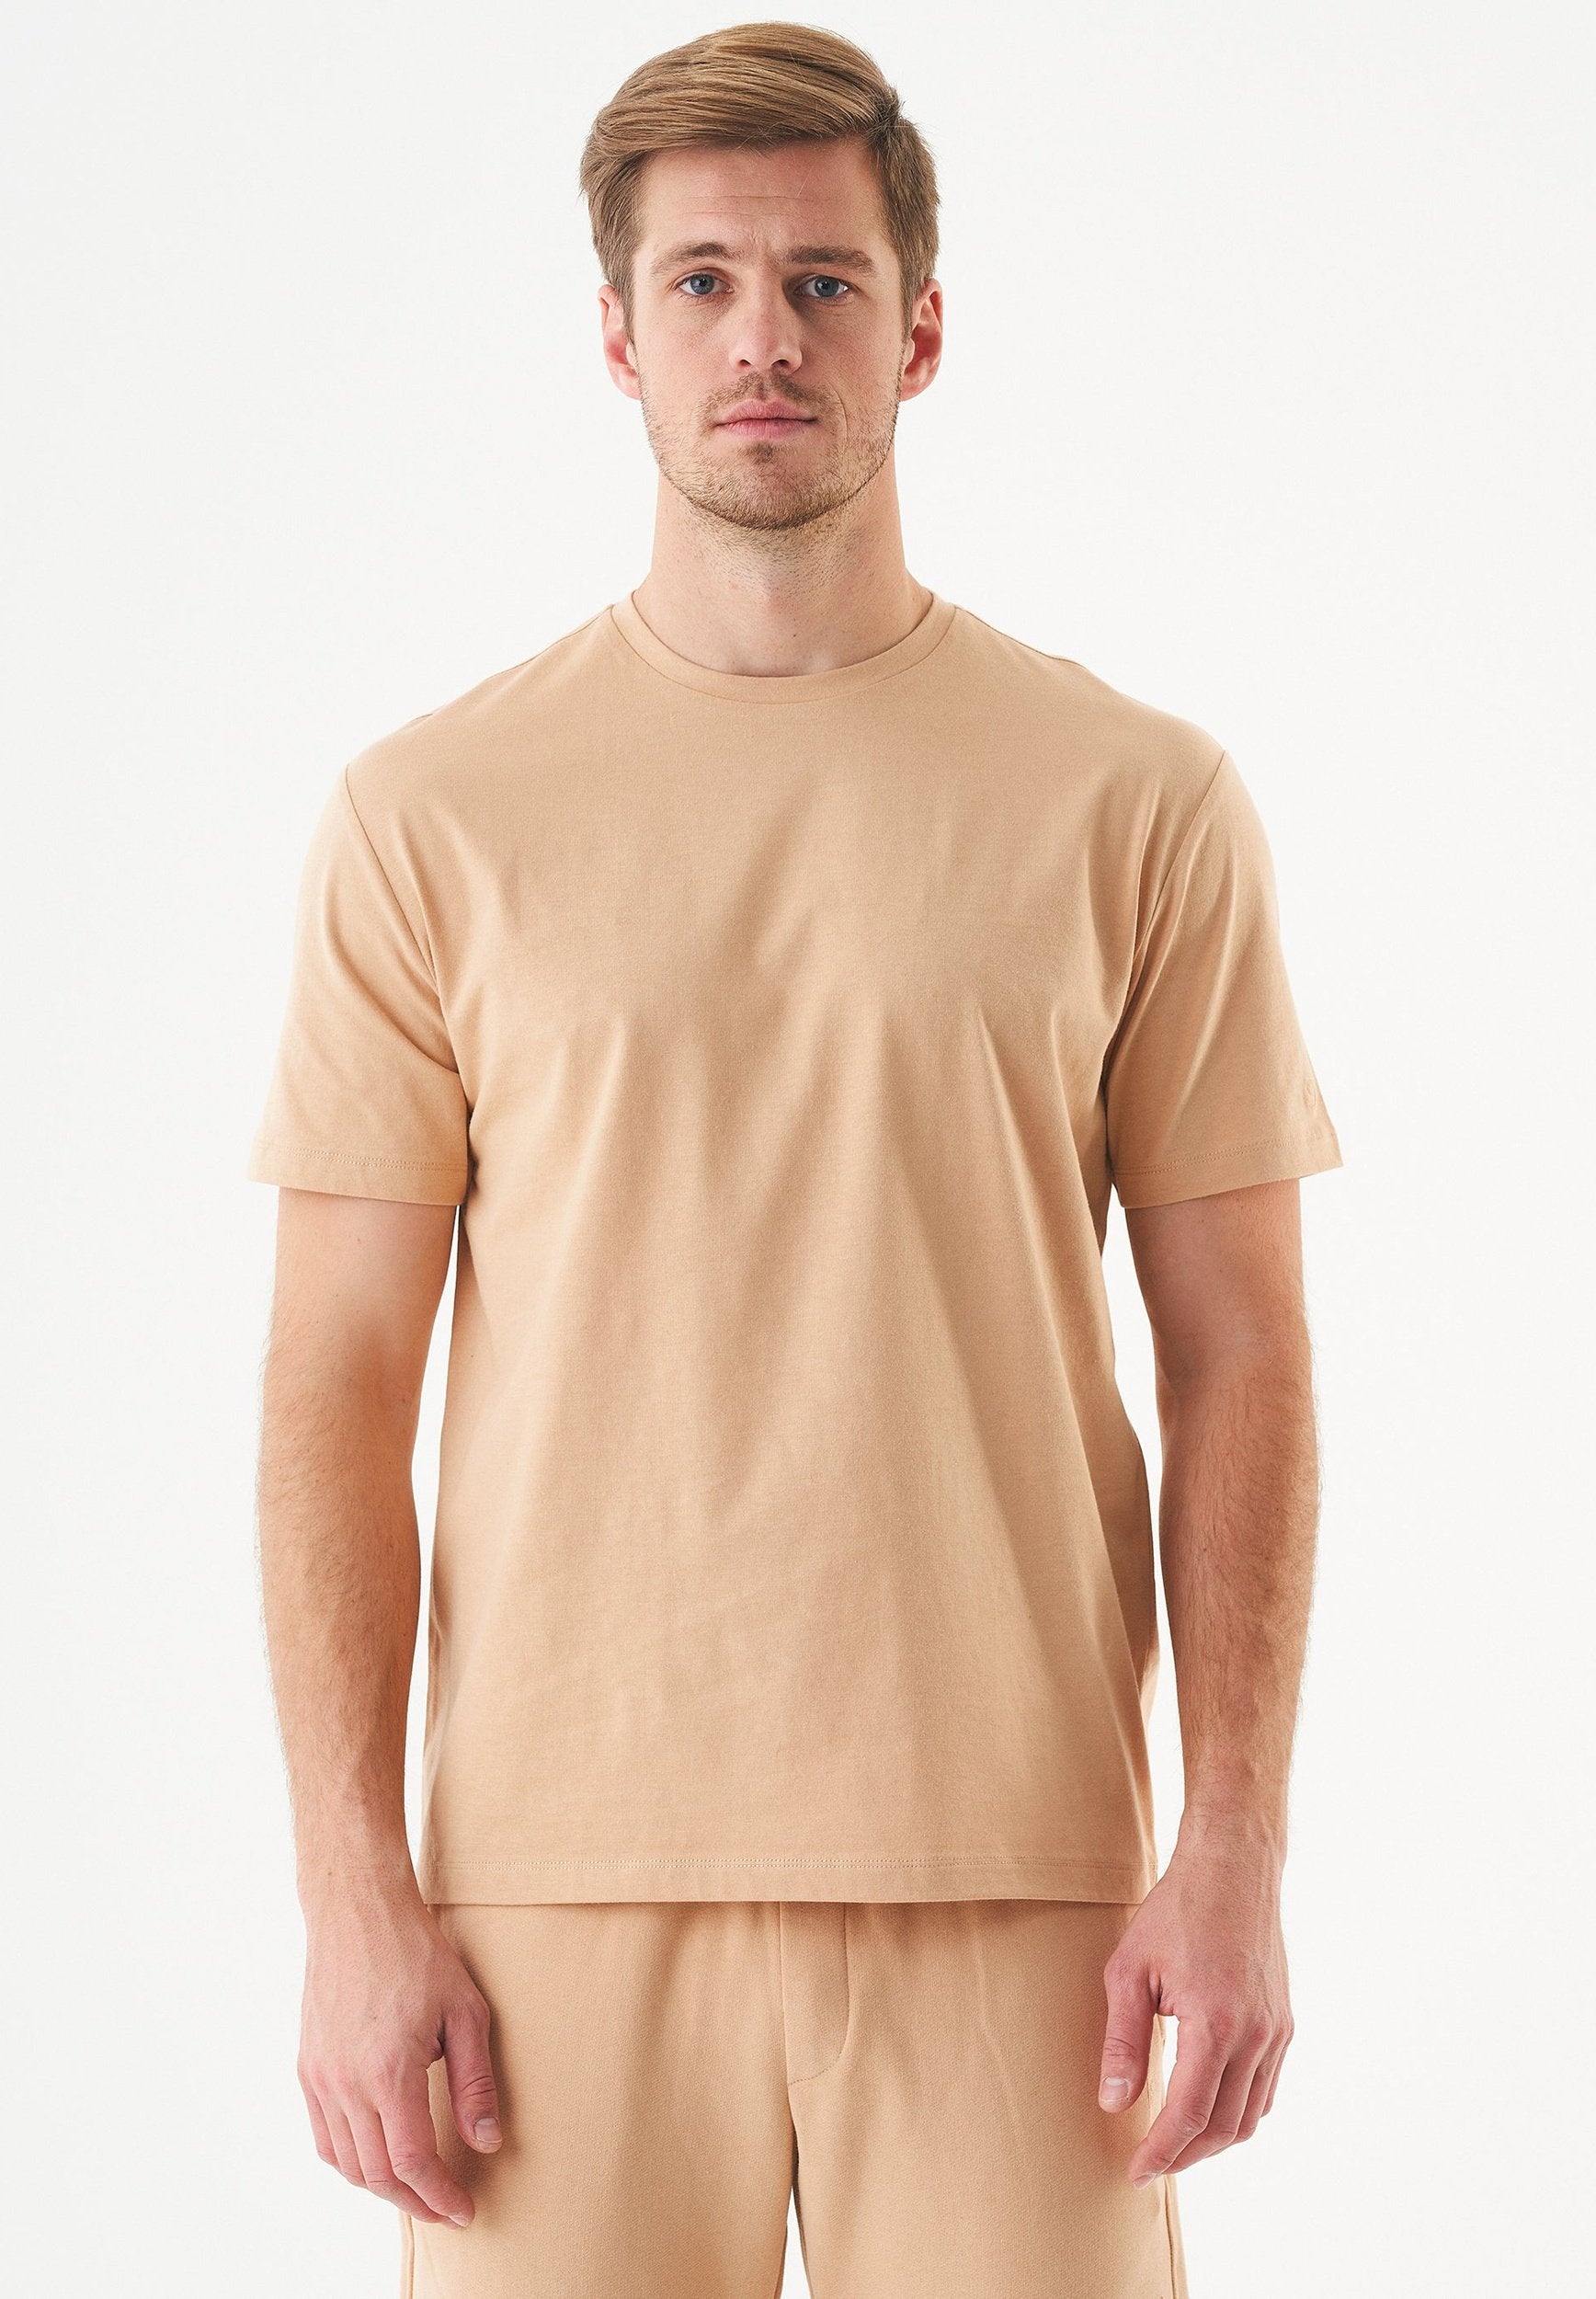 ESSENTIALS-TILLO- Unisex Basic T-Shirt aus Bio-Baumwolle